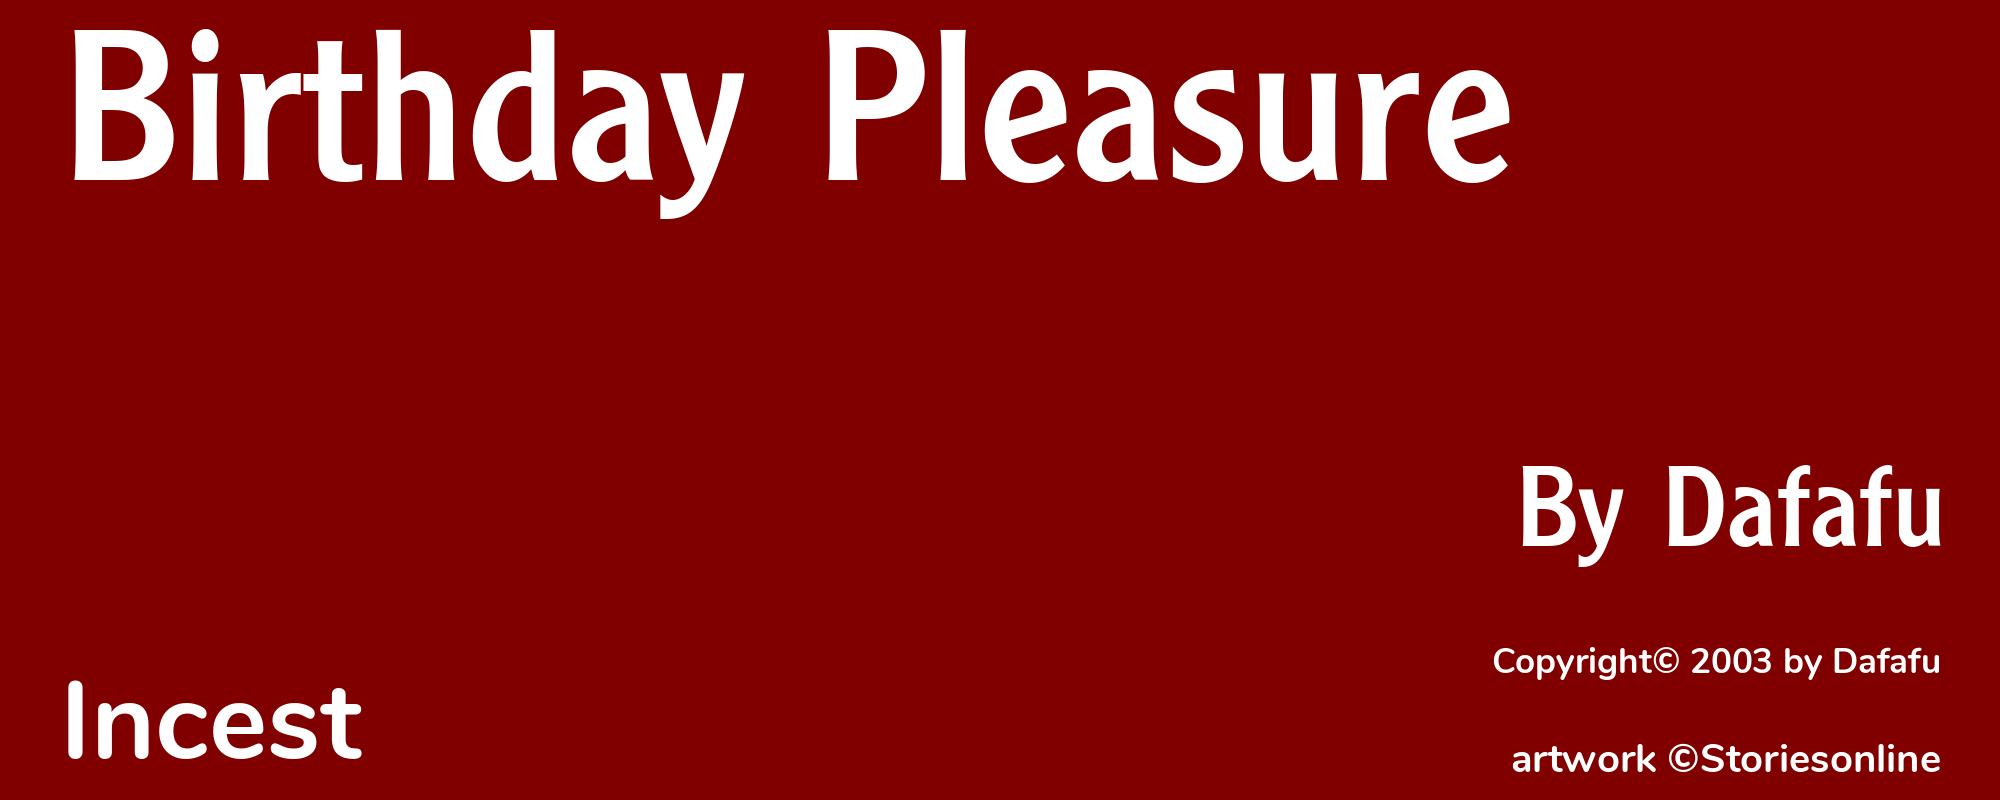 Birthday Pleasure - Cover